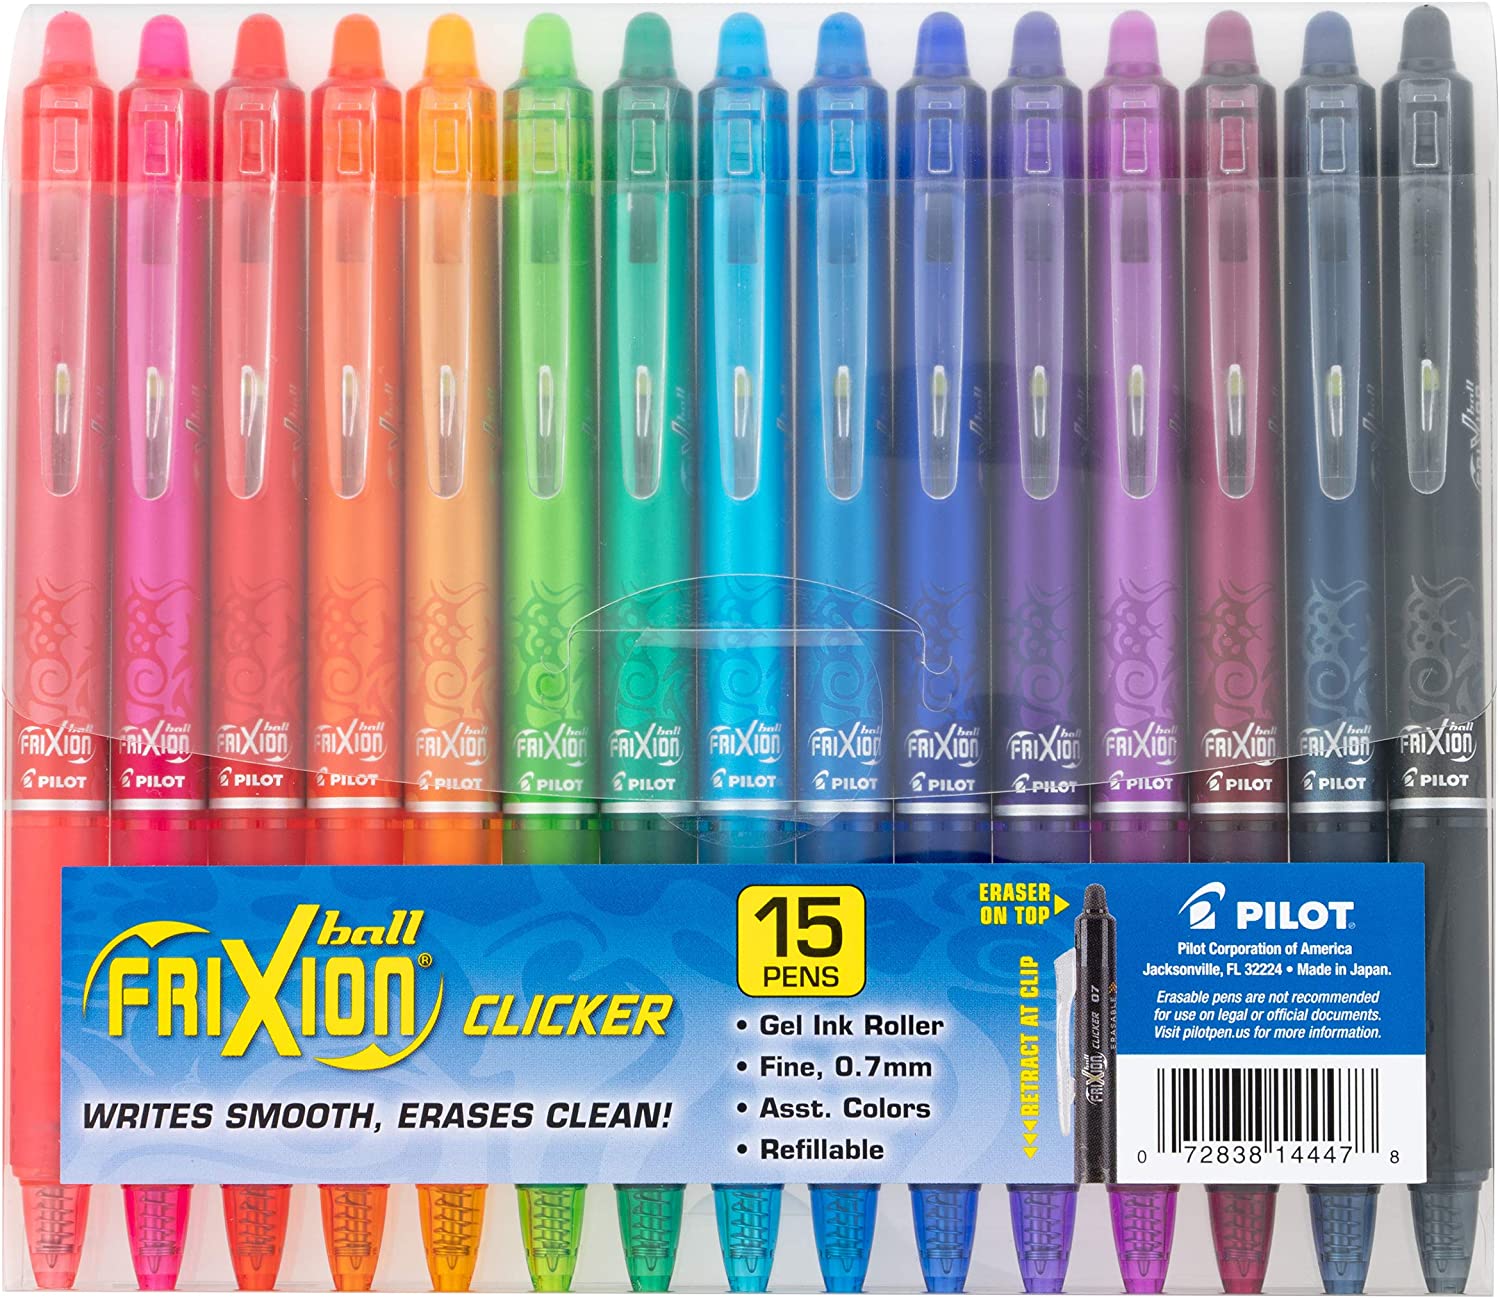 PILOT FriXion STEM Office Supplies Erasable Pens, 15-Pack